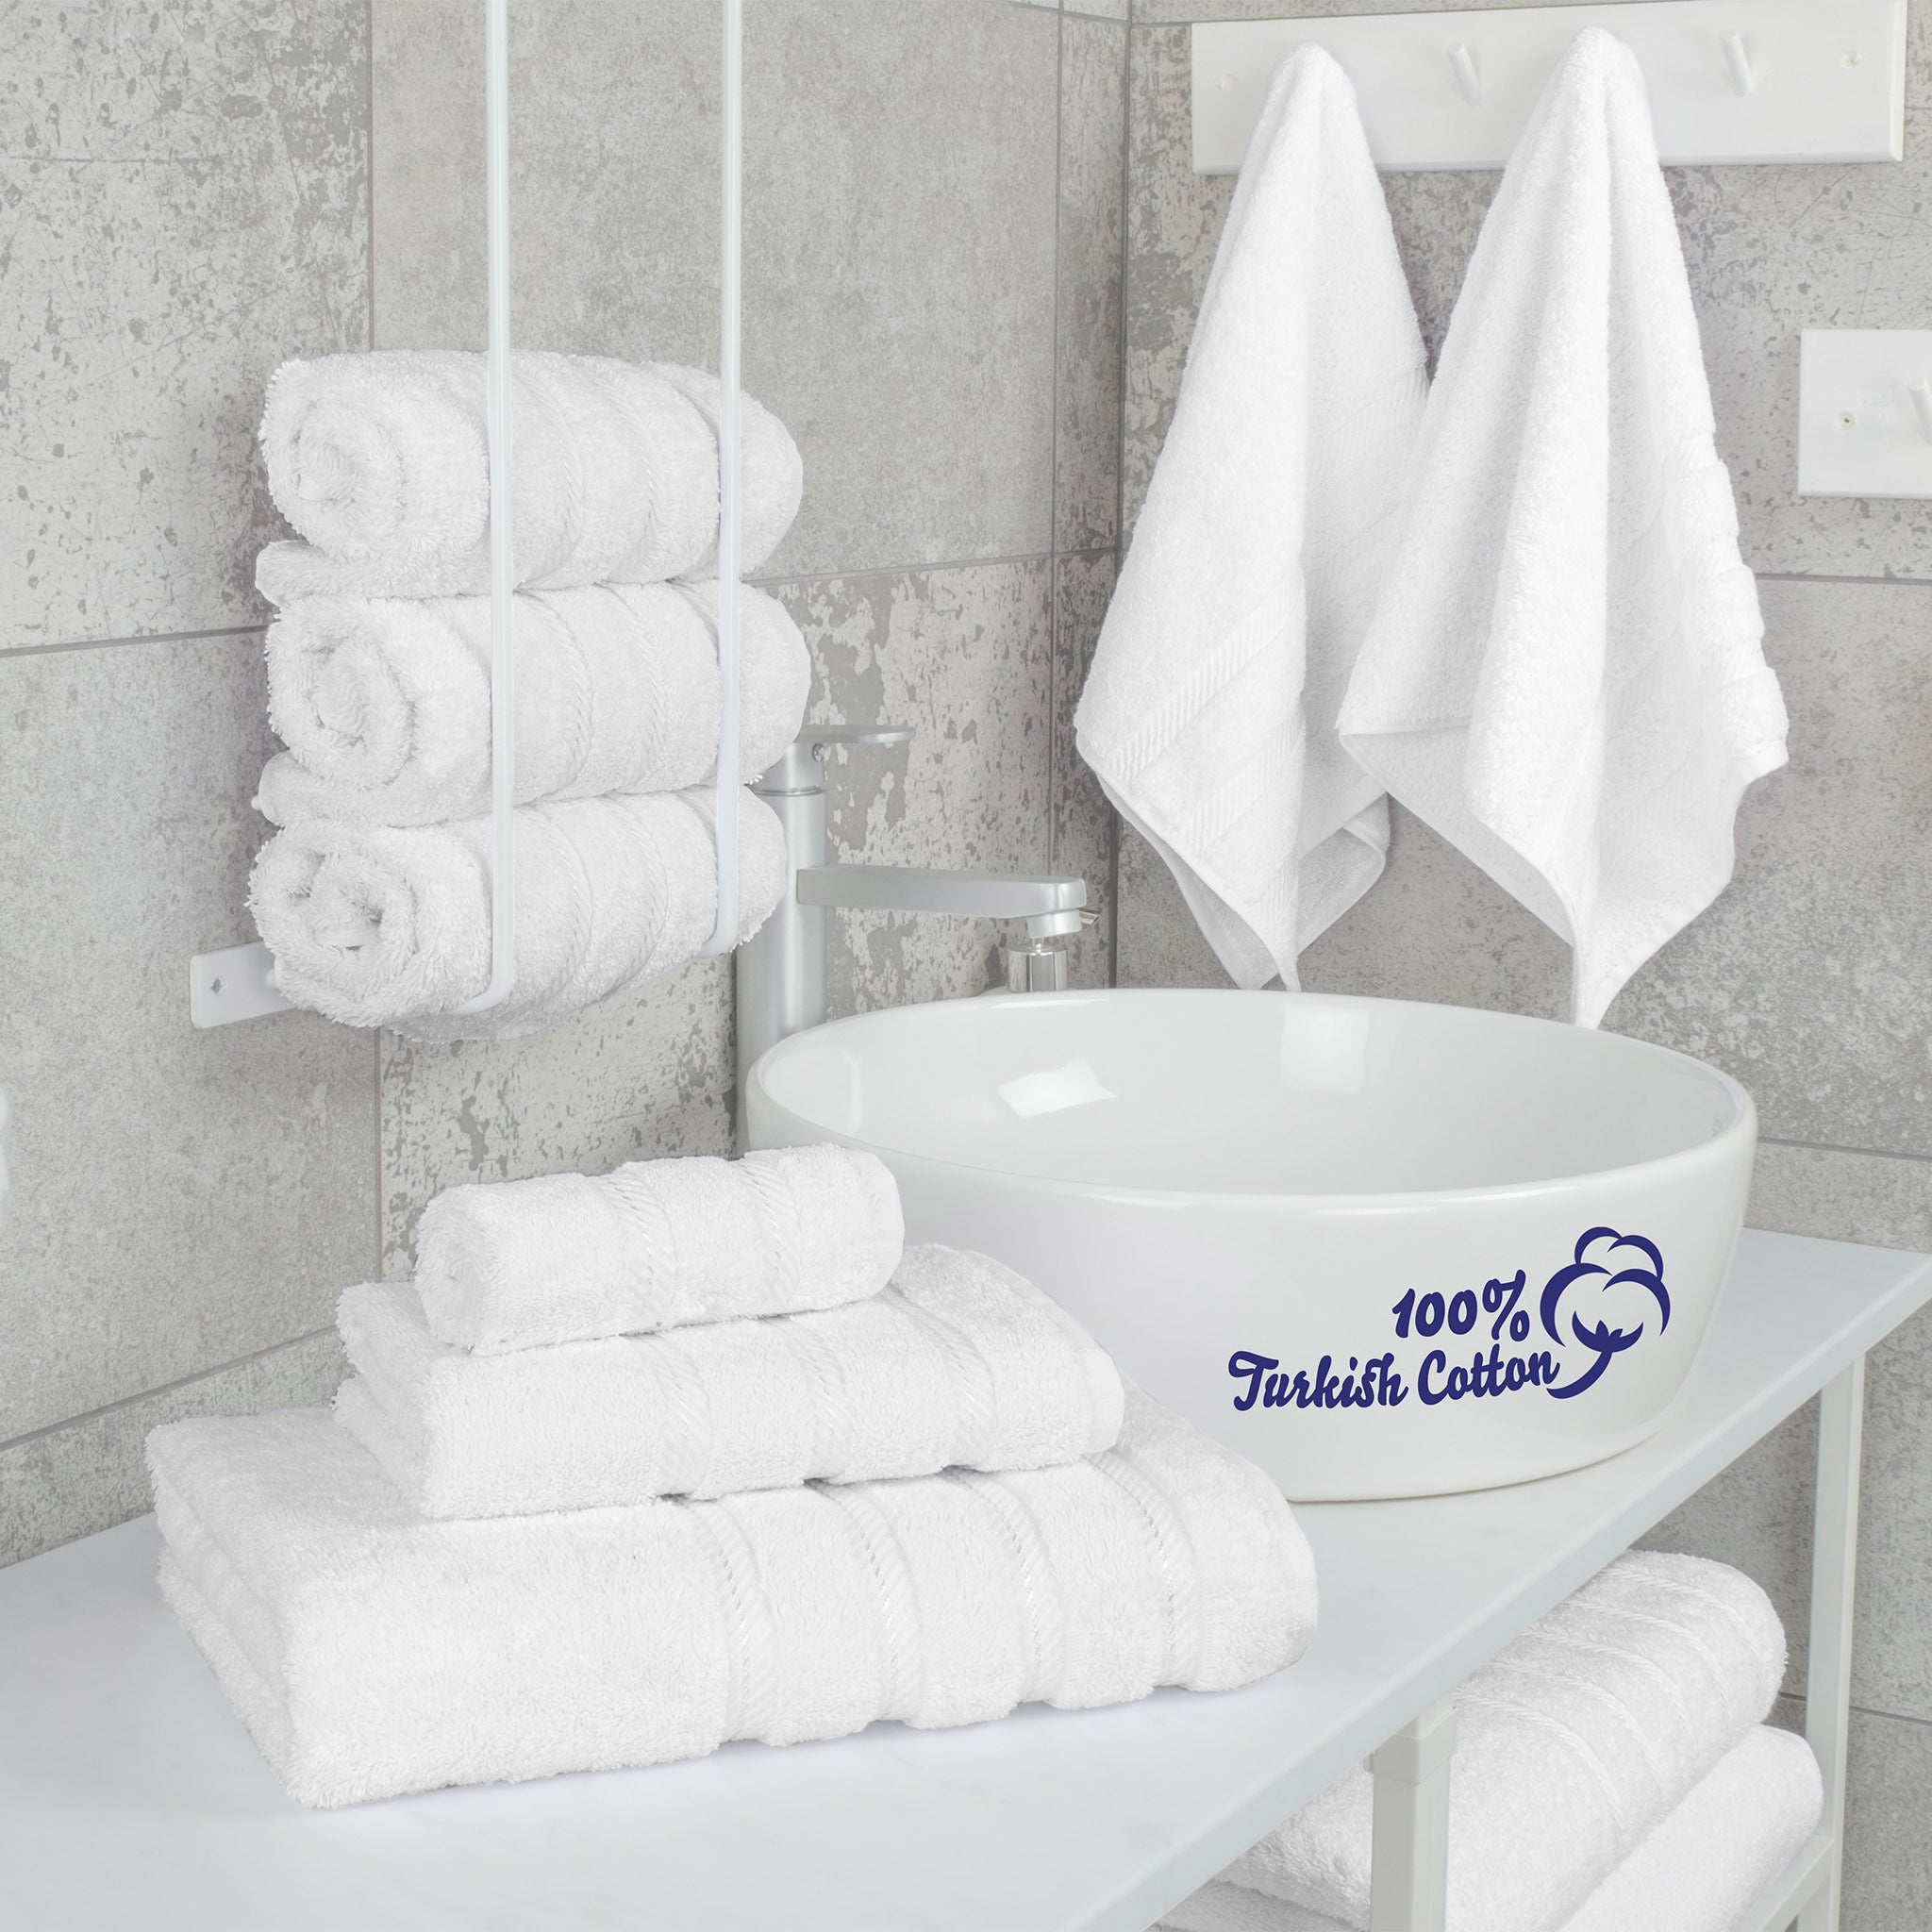 American Soft Linen 100% Turkish Cotton 6 Piece Towel Set Wholesale white-2